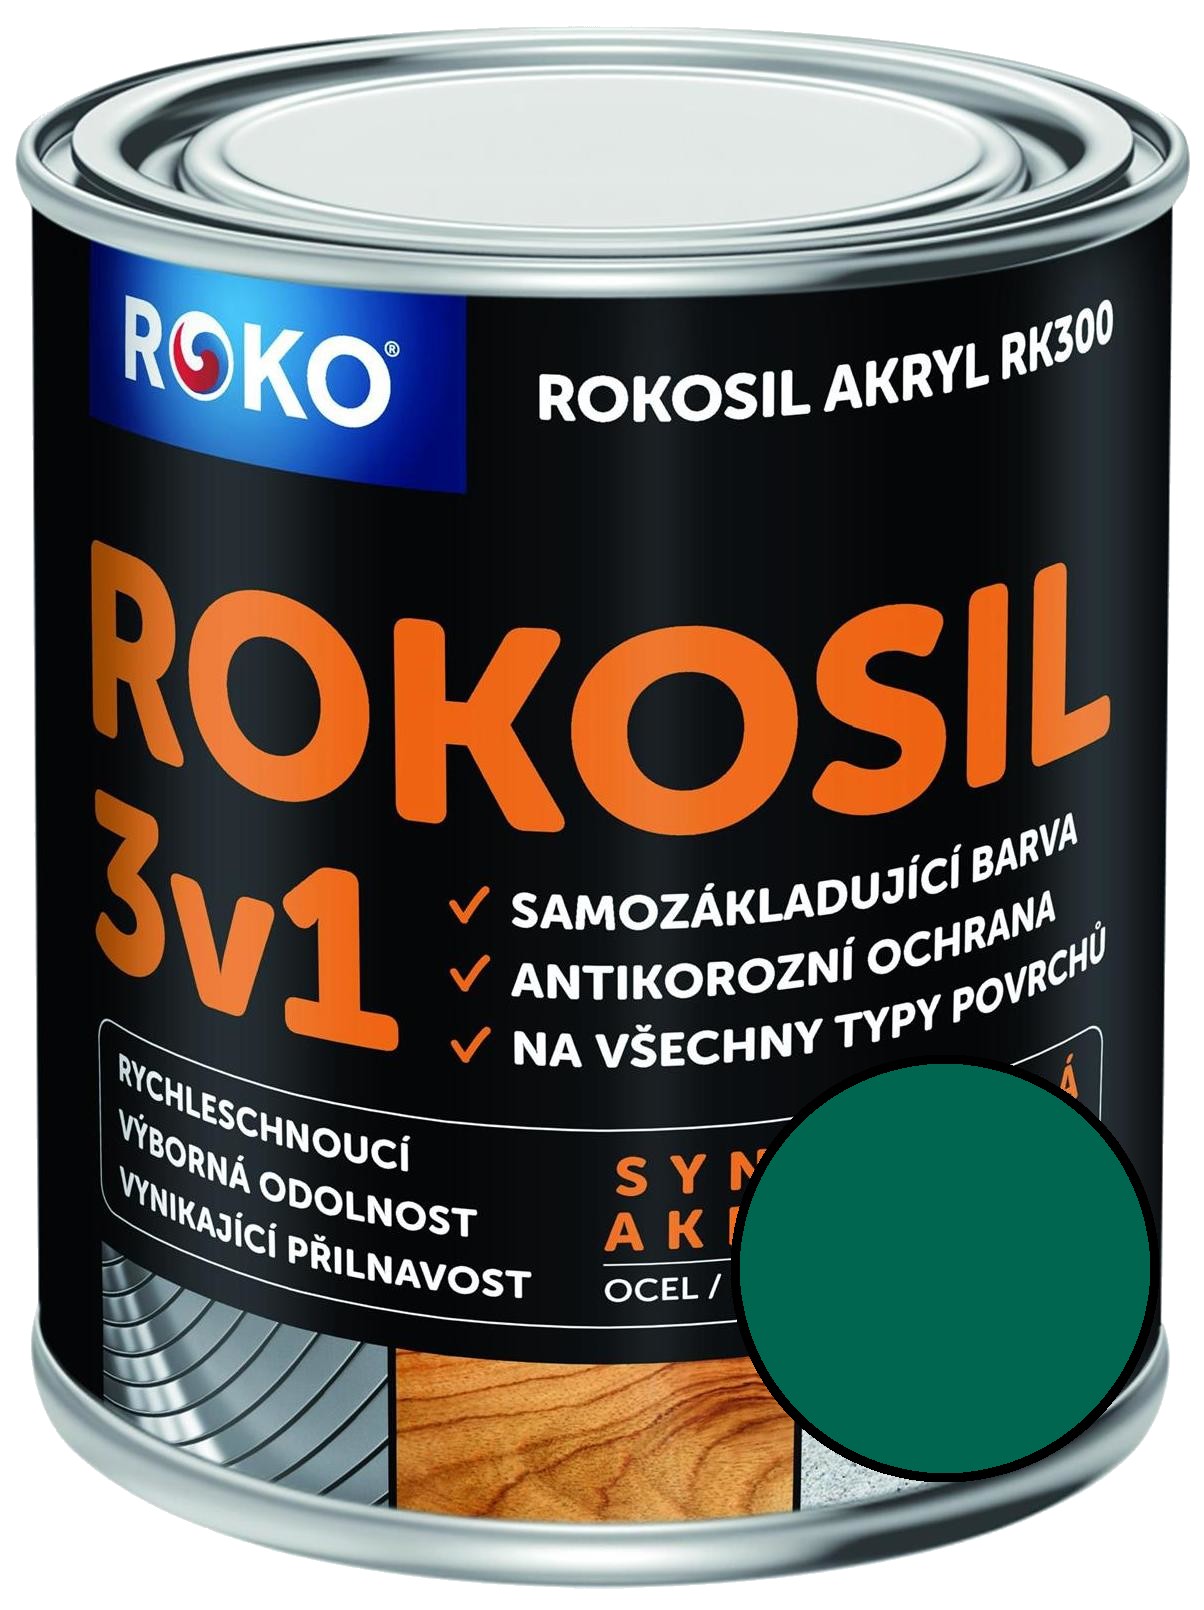 Barva samozákladující Rokosil akryl 3v1 RK 300 zelená tm. 0